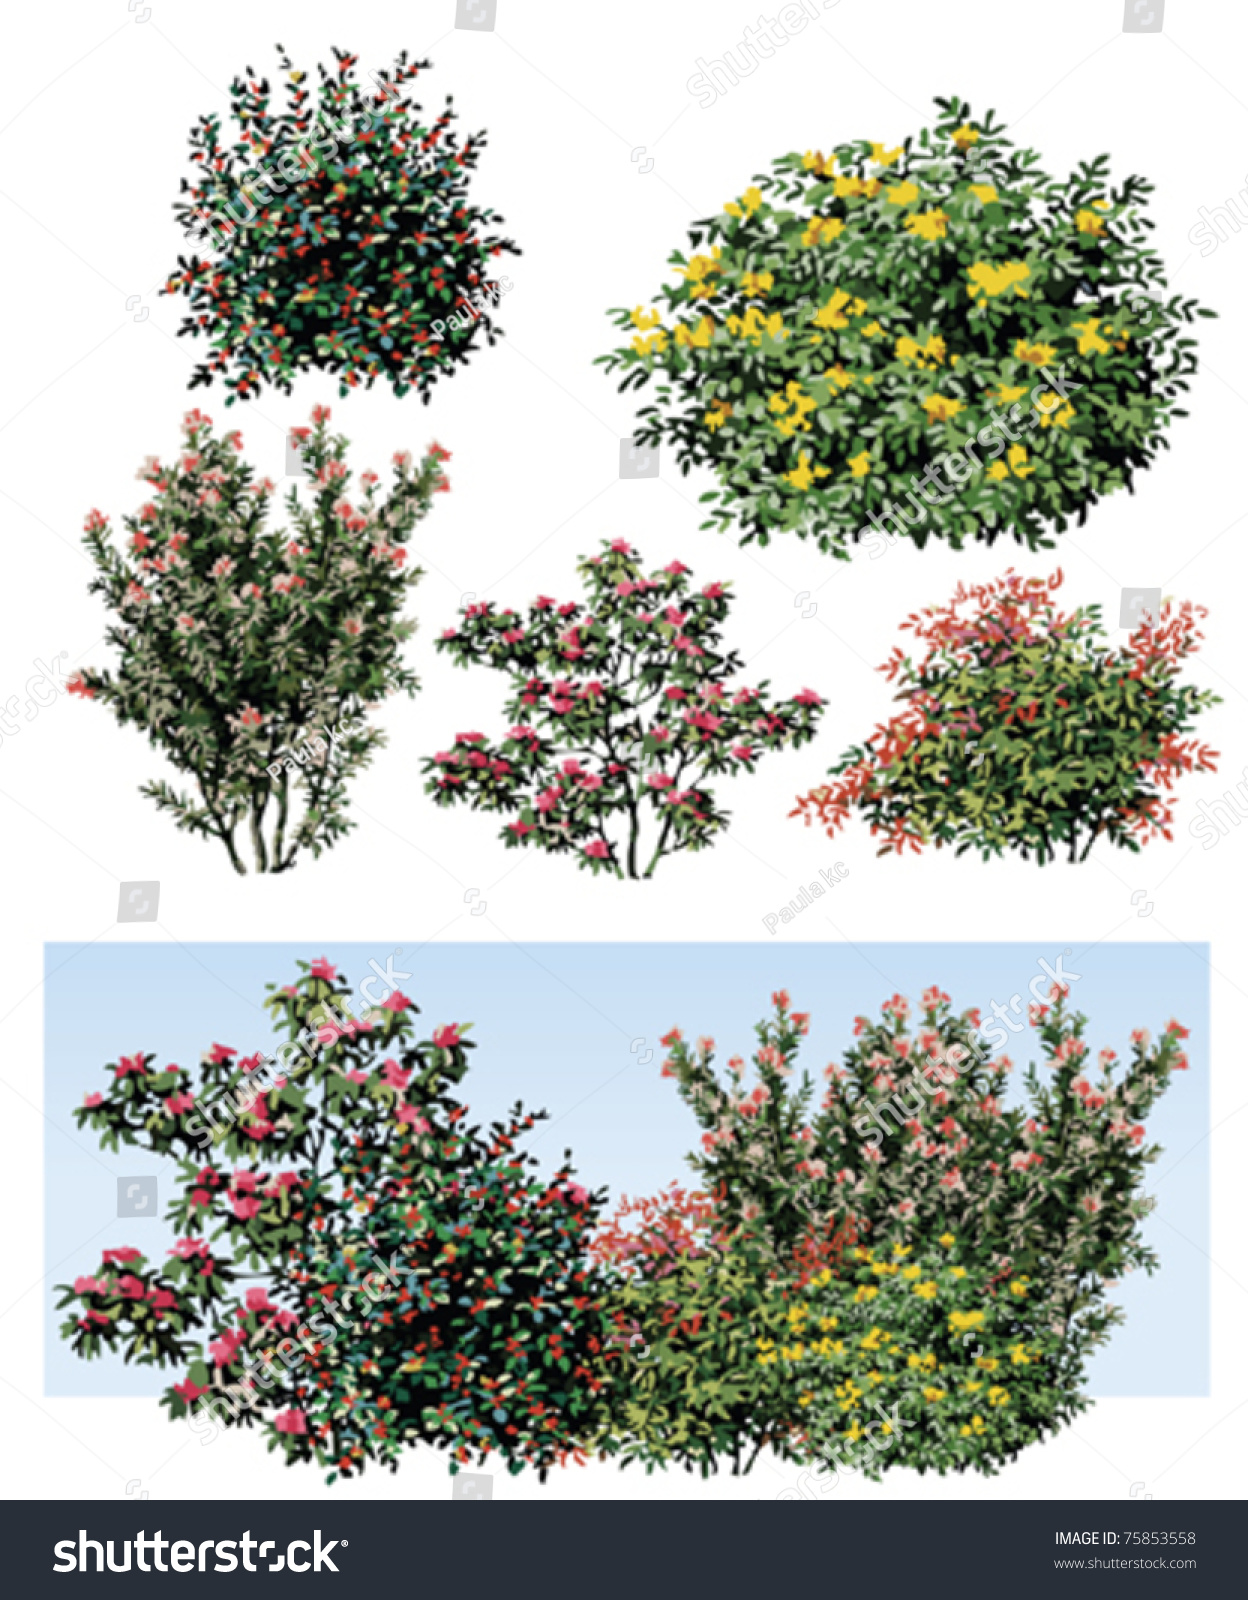 Shrub Flower Stock Vector Illustration 75853558 : Shutterstock